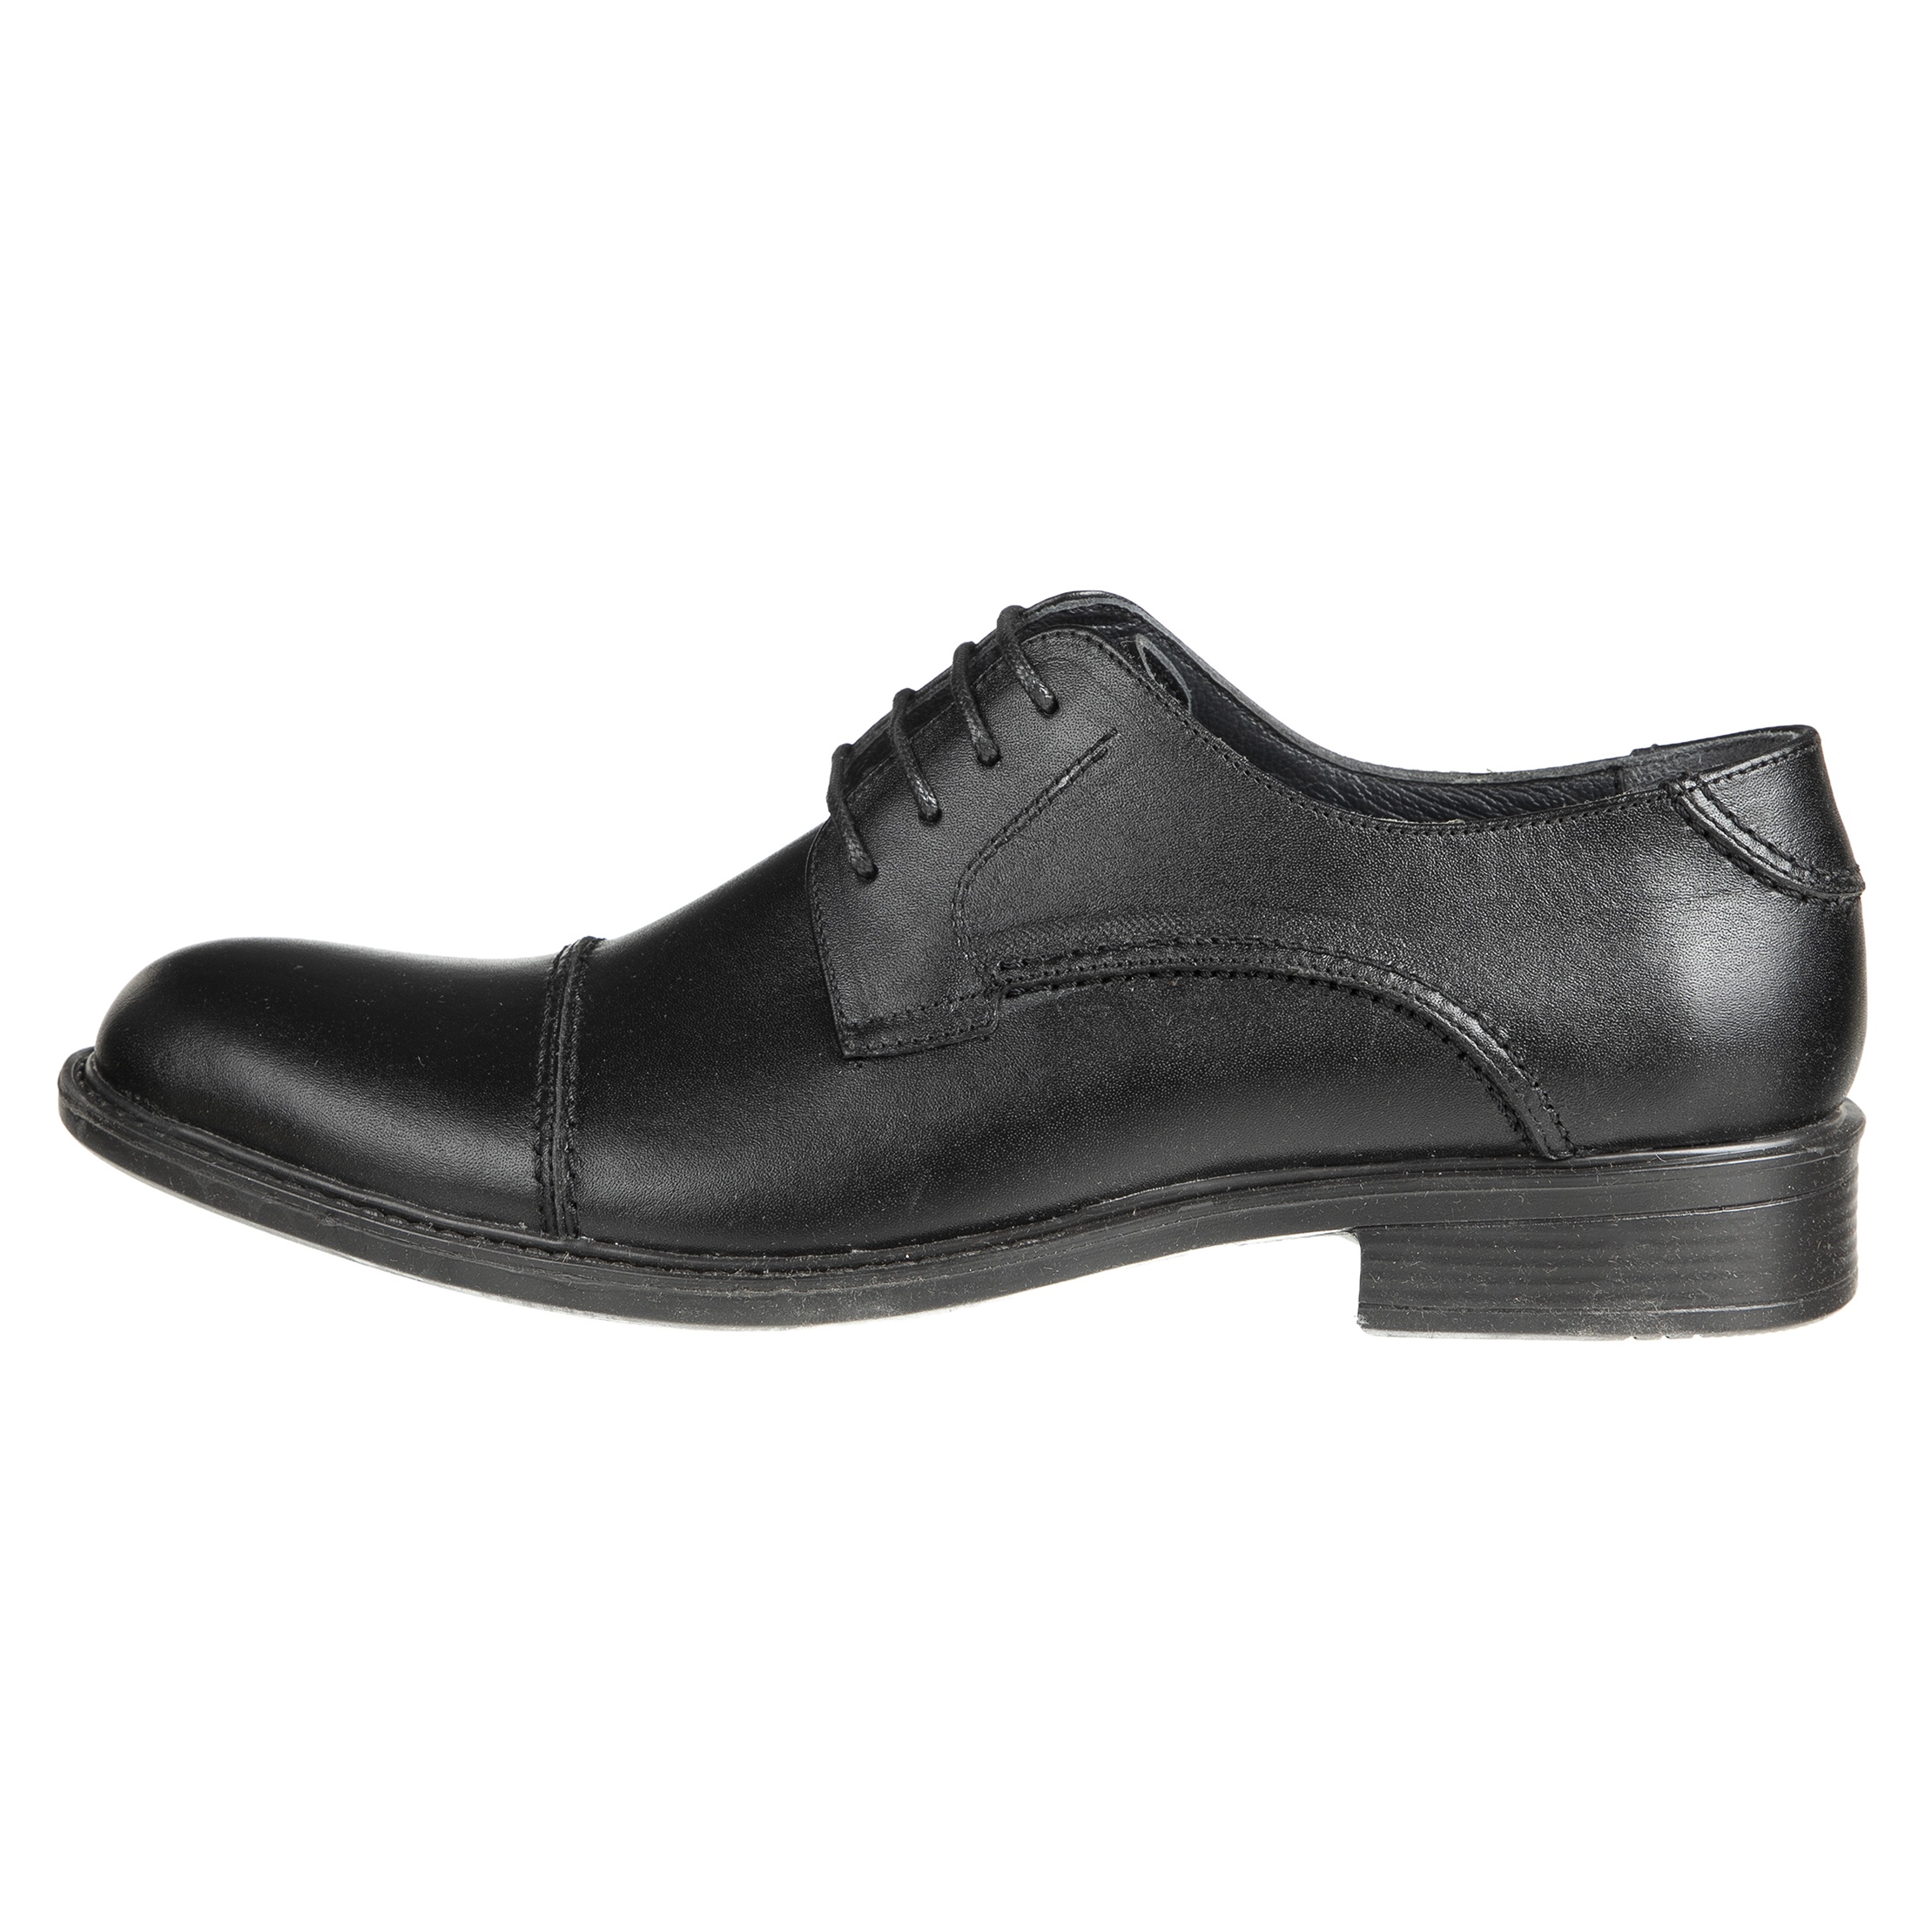 کفش مردانه دلفارد مدل 7219j503-101 - مشکی - 1